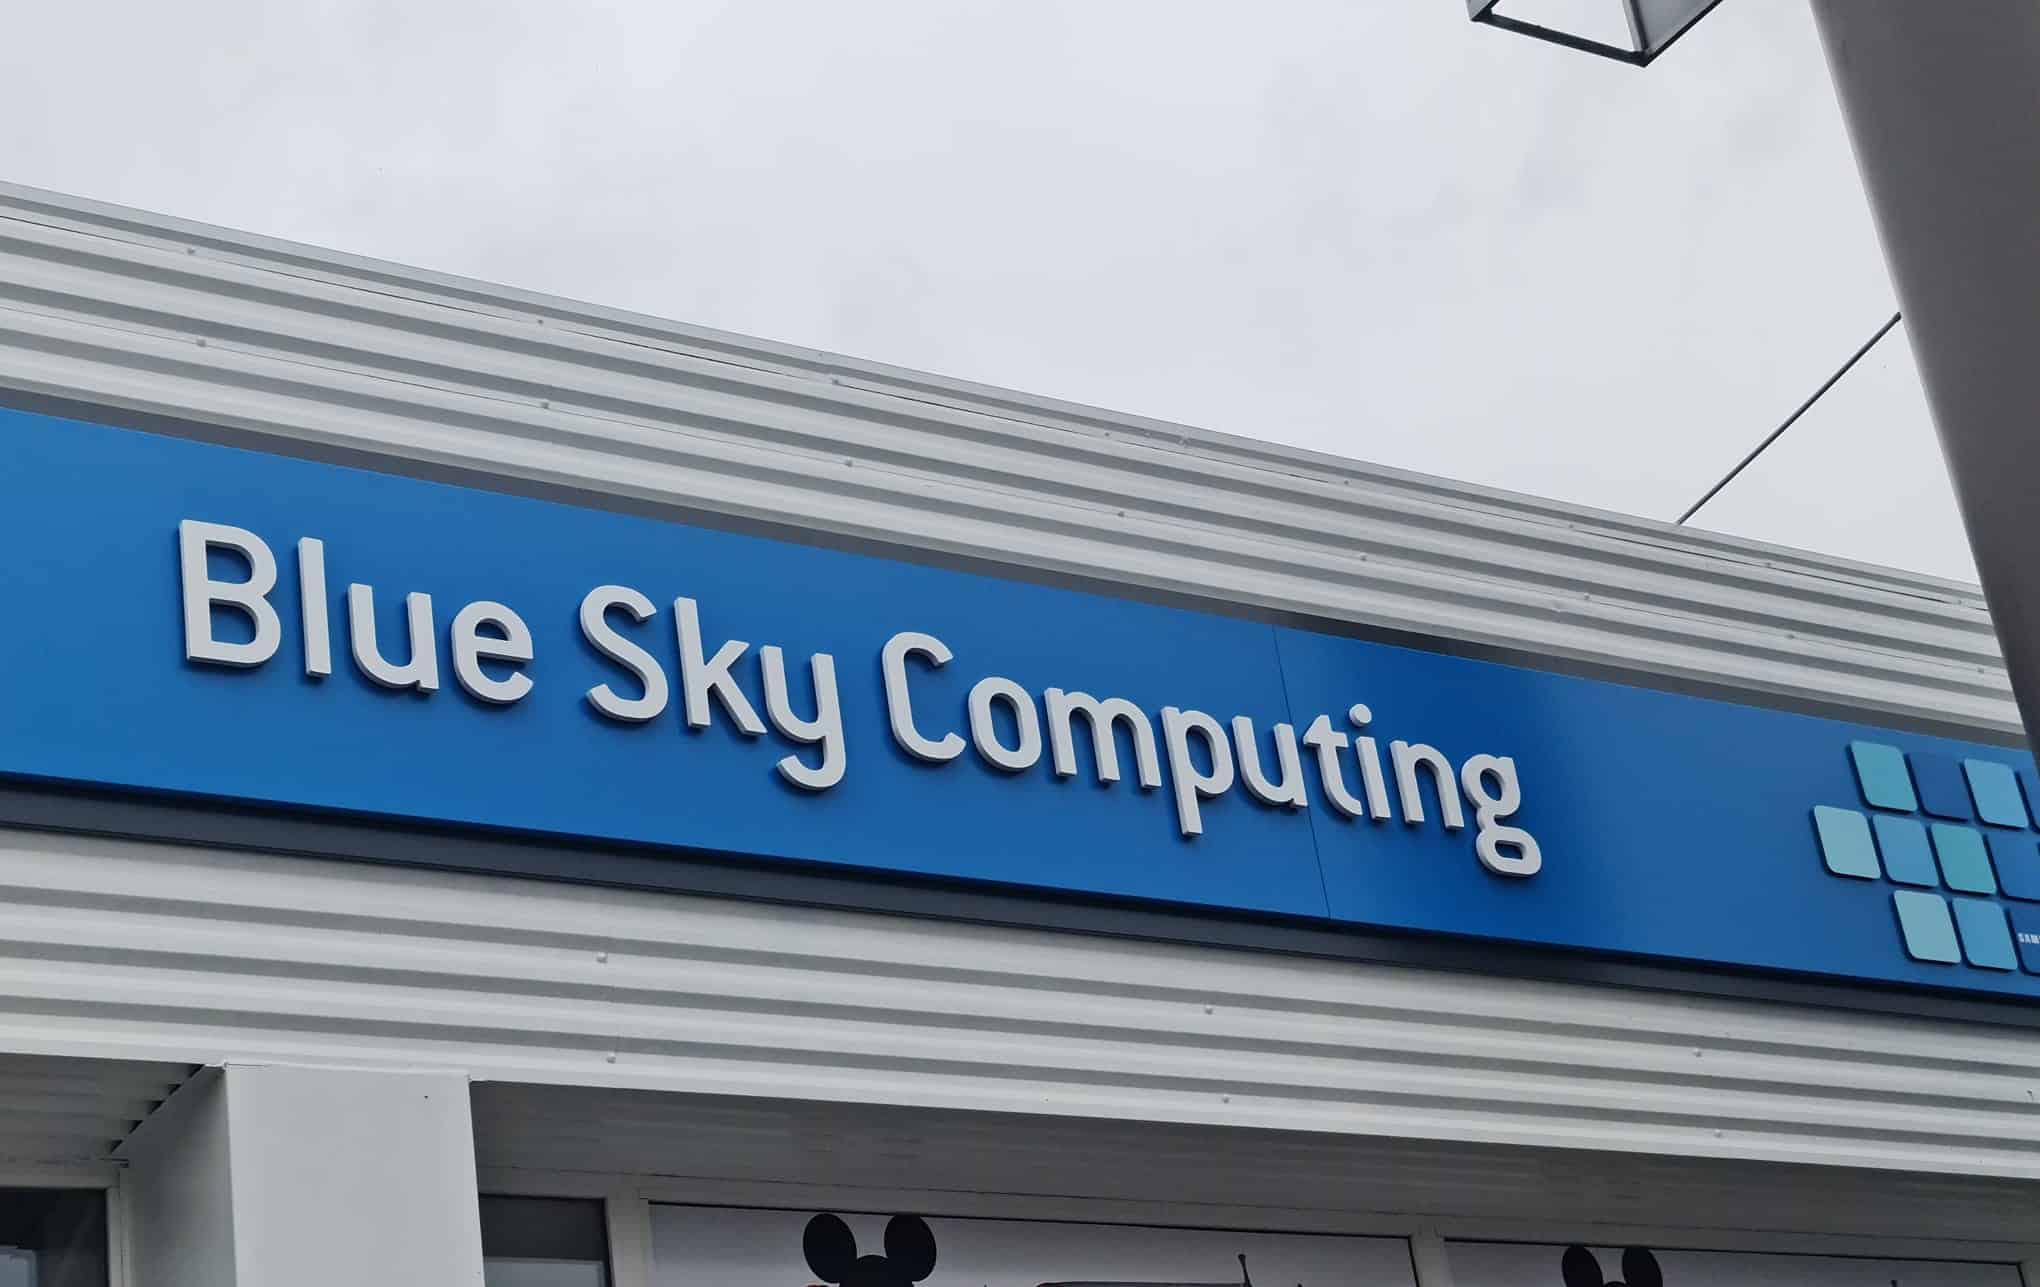 Blue Sky Computing